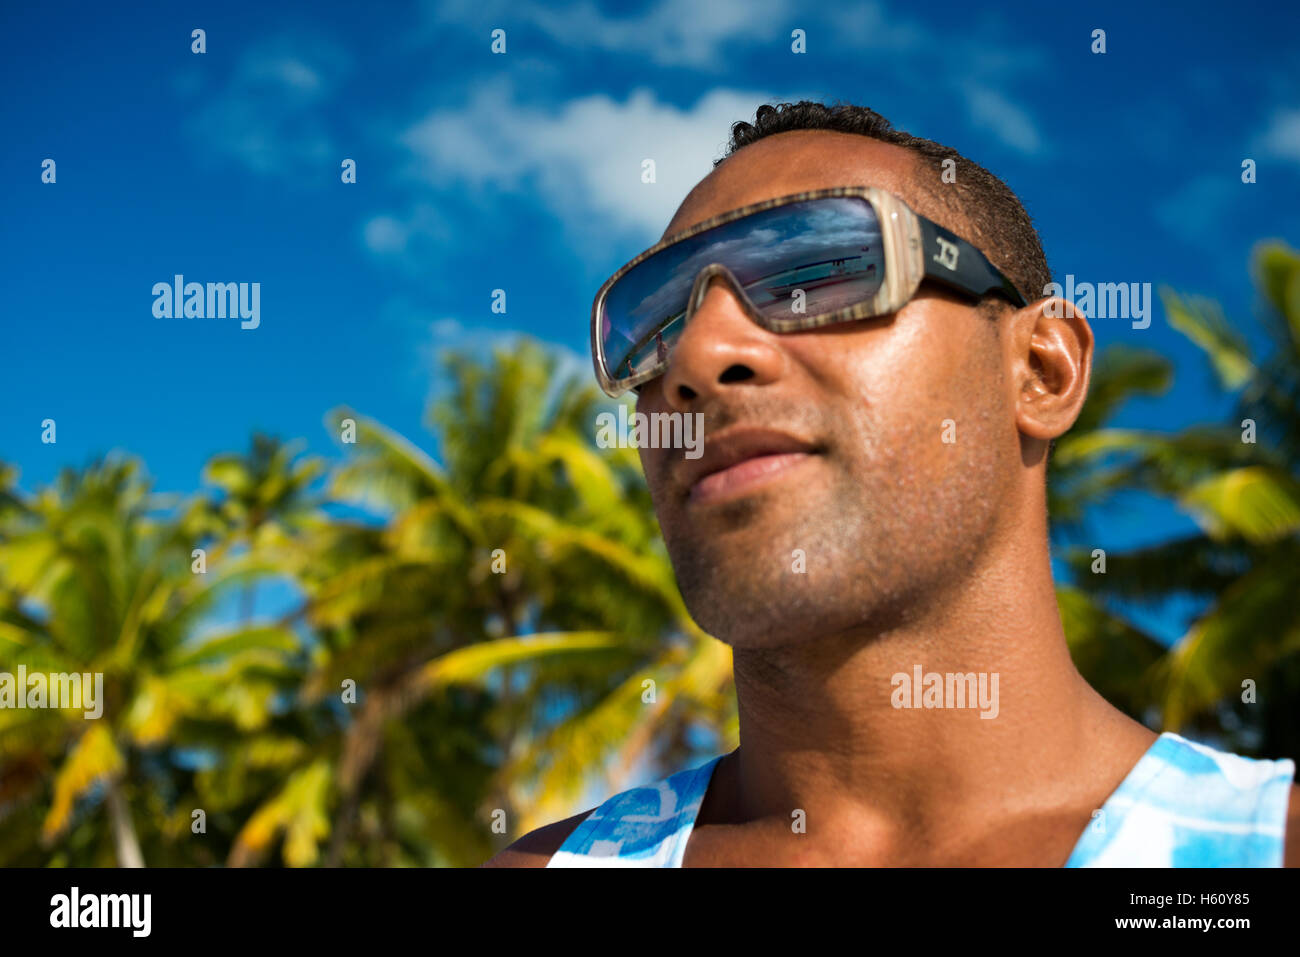 Uno de los habitantes de una isla de pie con sus gafas de sol. Aitutaki - el destino de vacaciones más populares en las Islas Cook Foto de stock